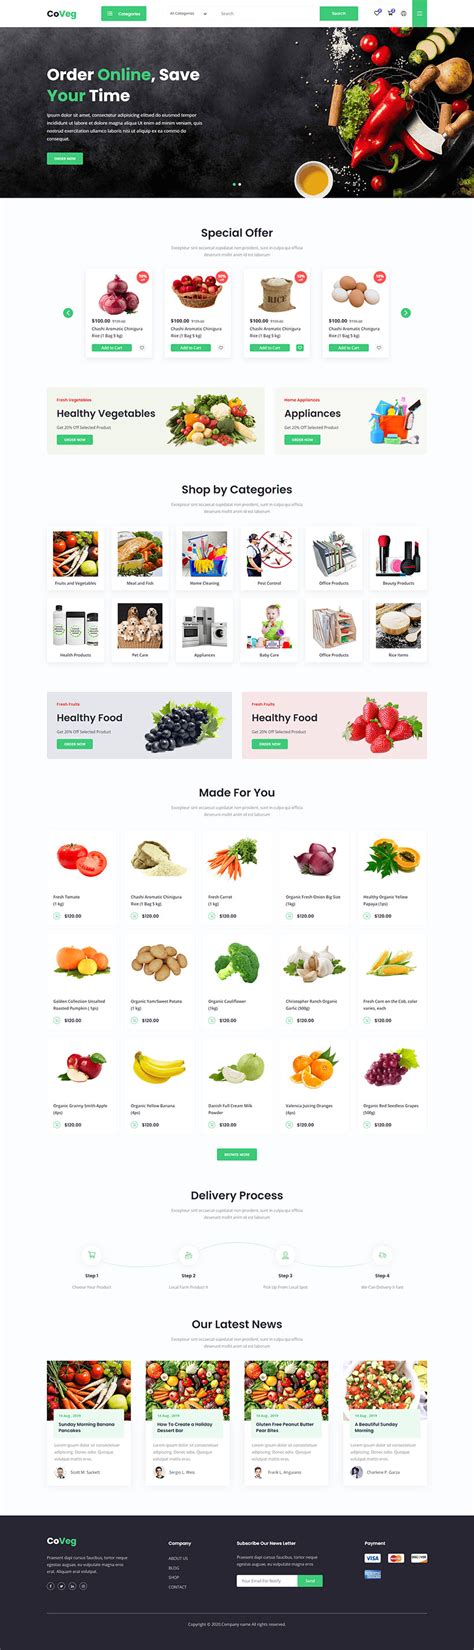 果蔬农产品在线商城模板 有机蔬菜html模版下载